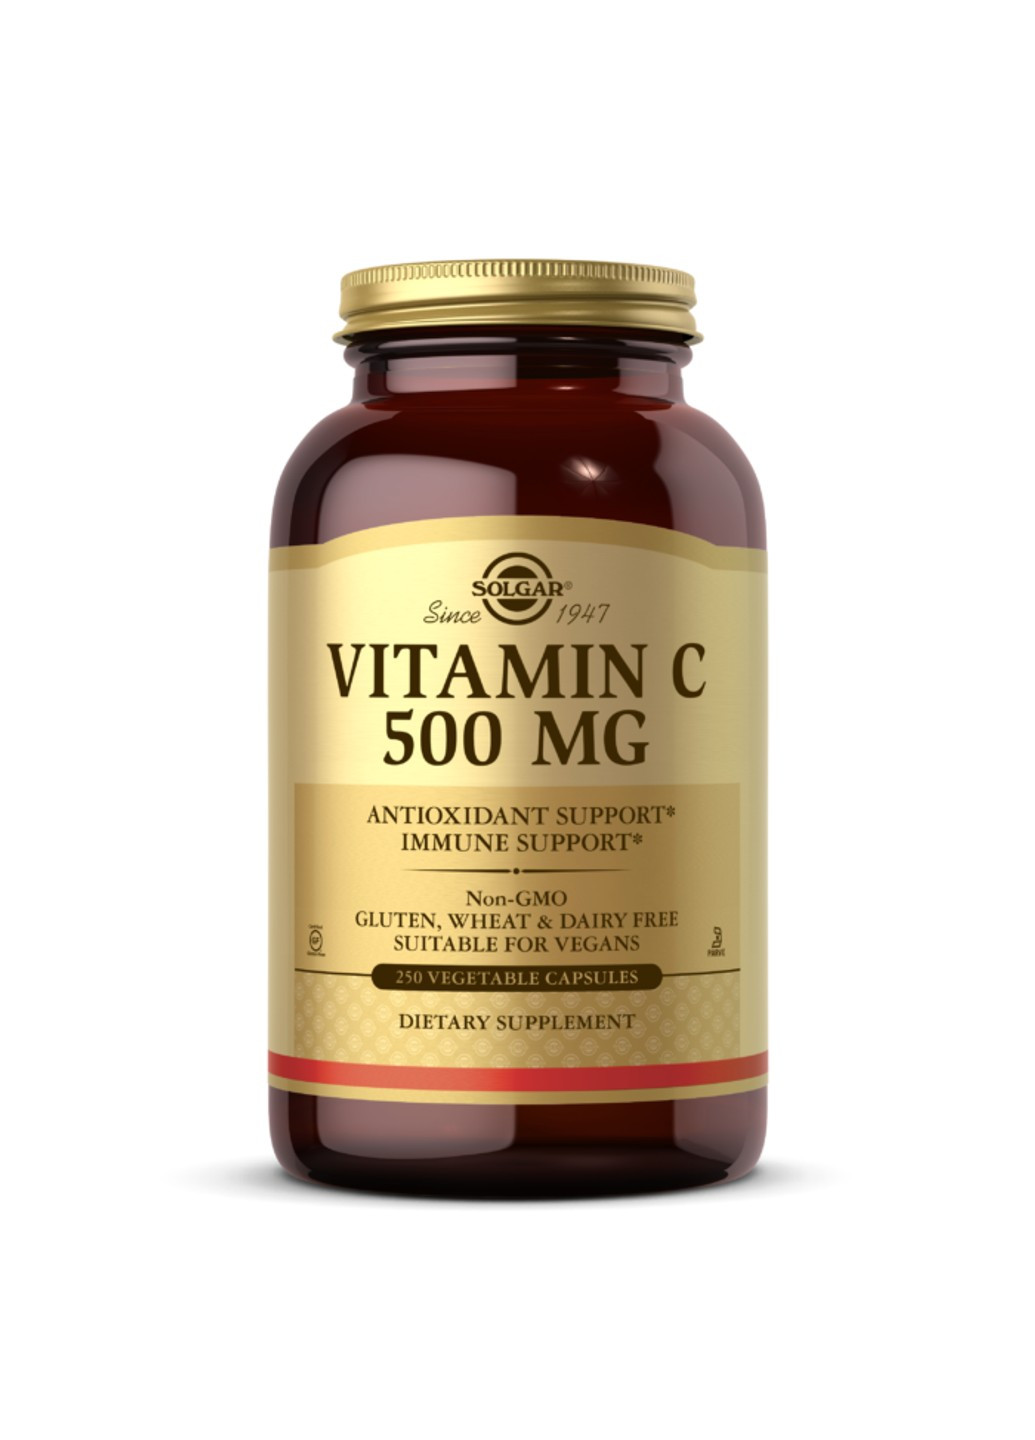 Витамин С Vitamin C 500 mg (250 капс) солгар Solgar (255410393)